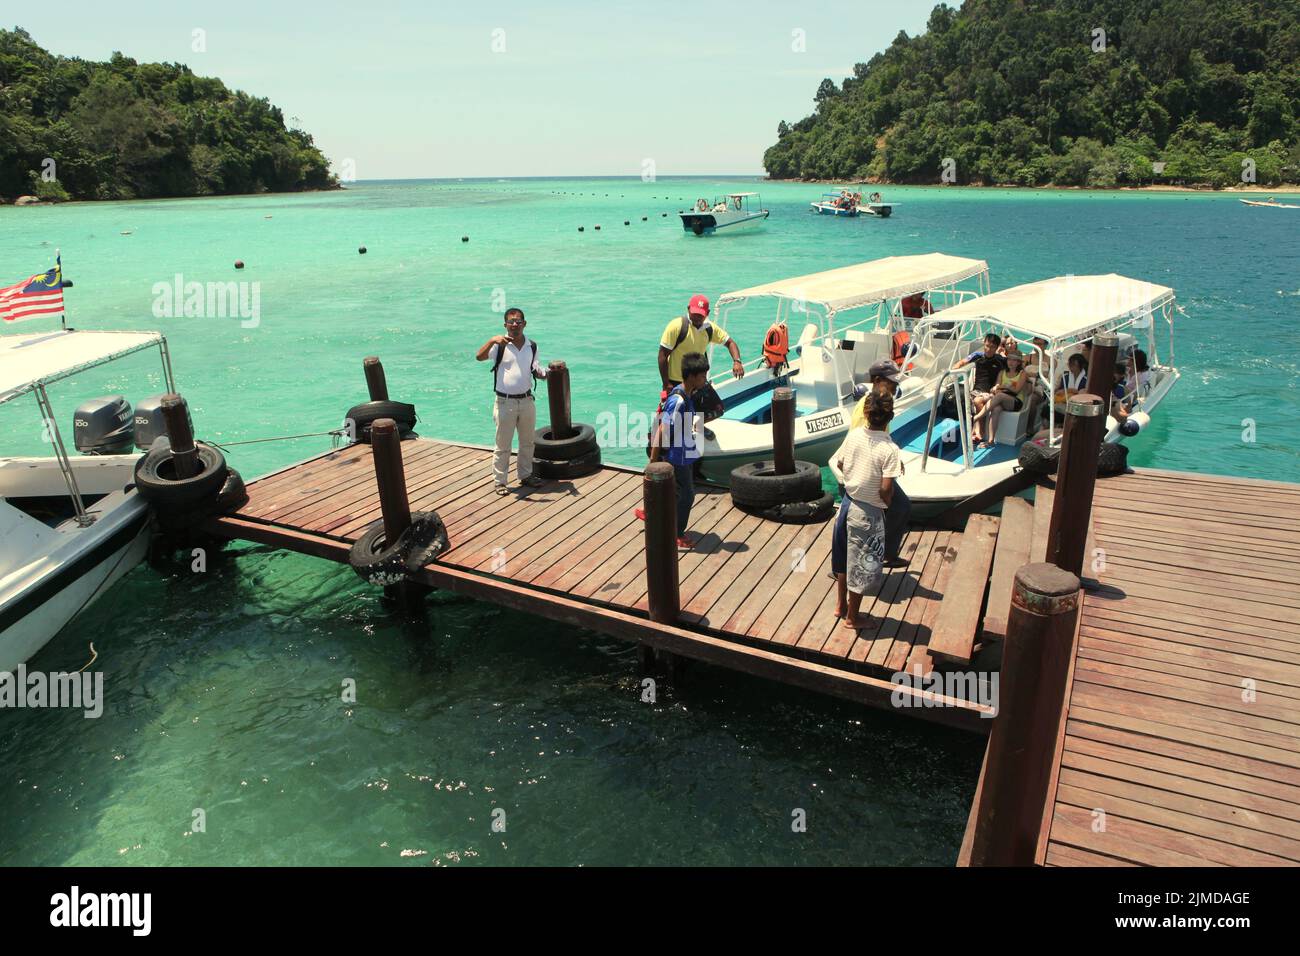 Los visitantes salen de los barcos cuando llegan a un embarcadero en Pulau Sapi (isla SAPI), una parte del parque Tunku Abdul Rahman en Sabah, Malasia. Foto de stock